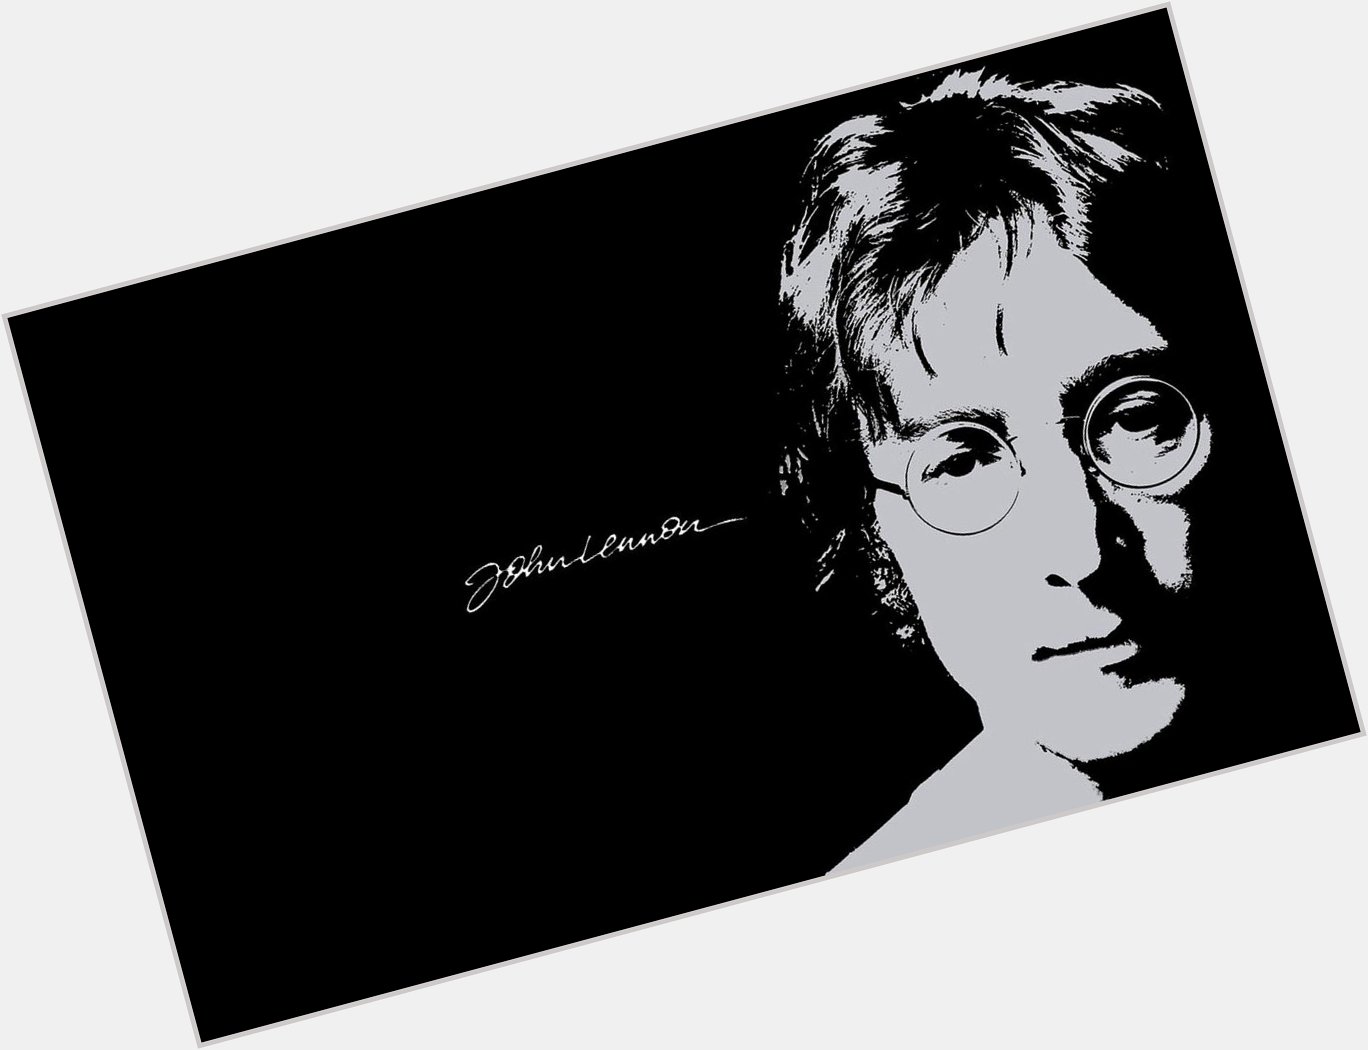 Happy Heavenly Birthday John Lennon 75 years old today. 10/9/40 - 